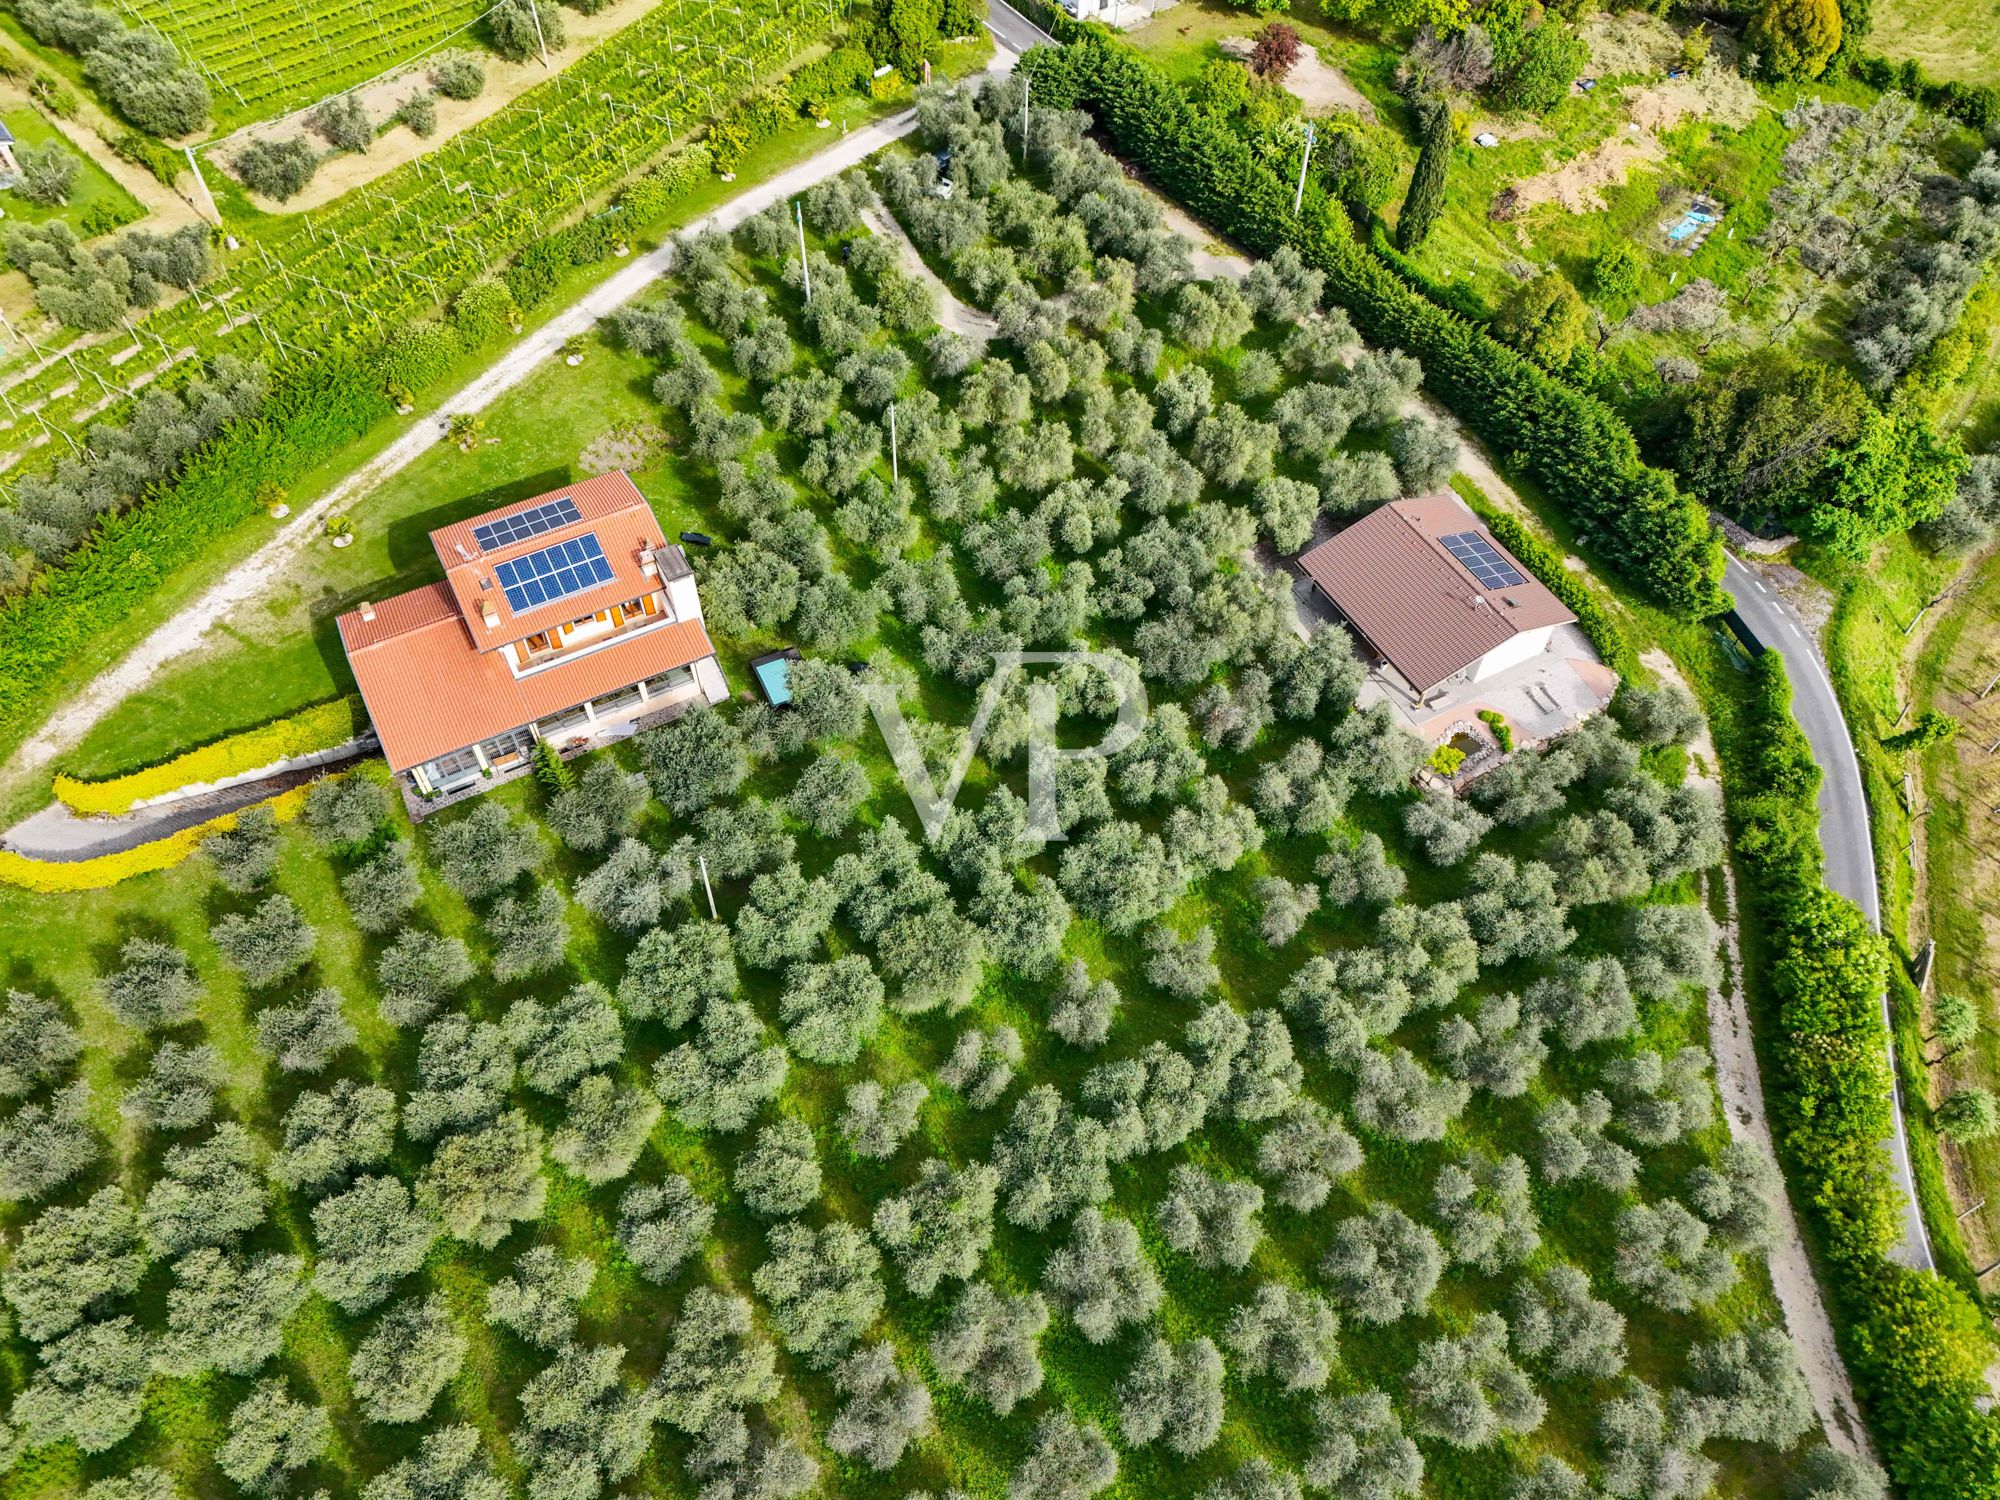 Maison de vacances, agritourisme, manège et B&B nichés dans une oliveraie de 3 hectares